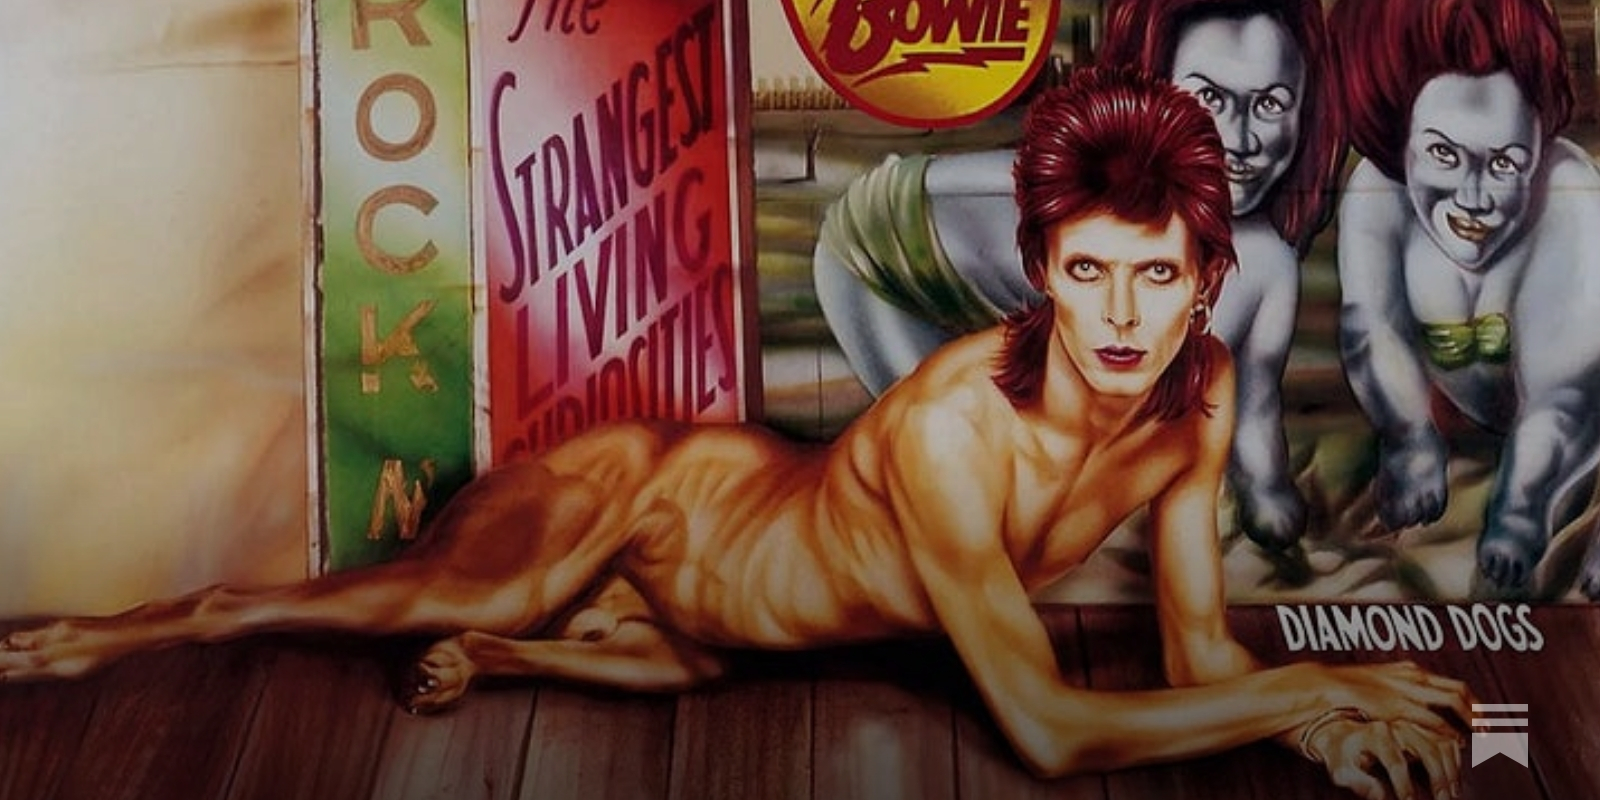 Is 'Diamond Dogs' David Bowie's Greatest Album?